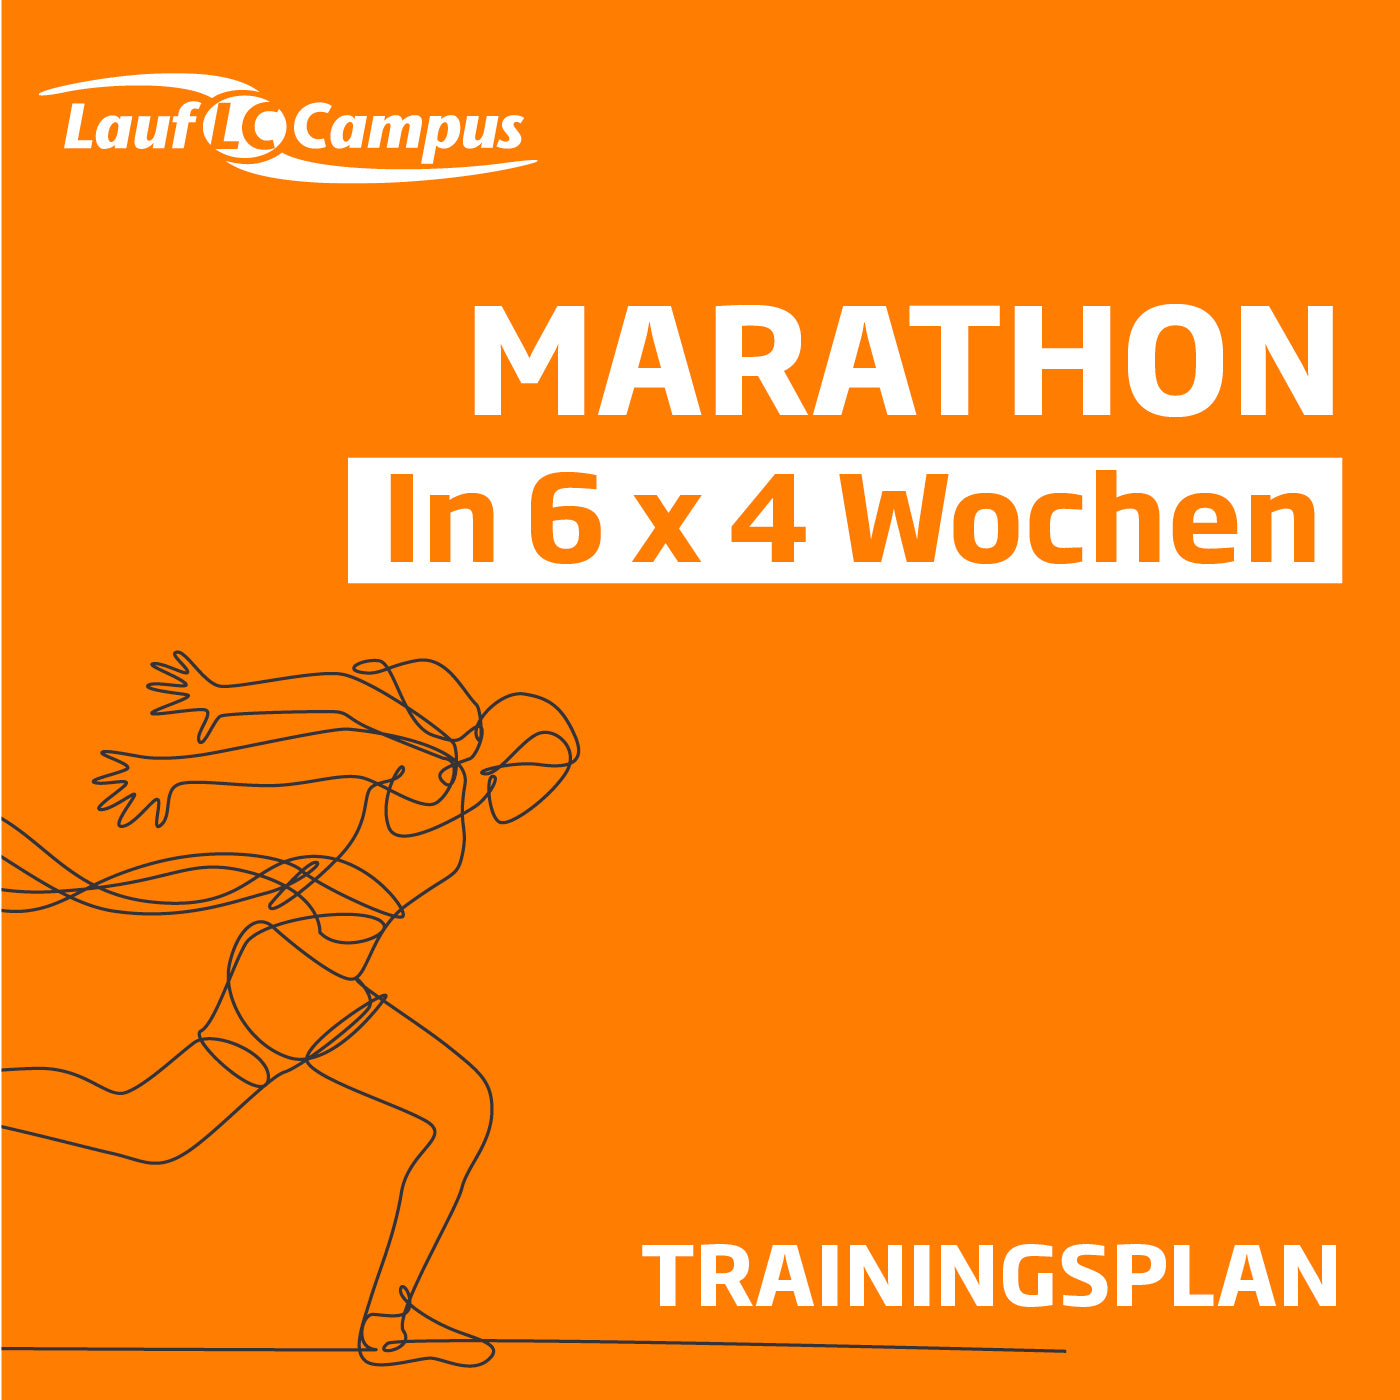 Trainingsplan für Marathon in 6 x 4 Wochen